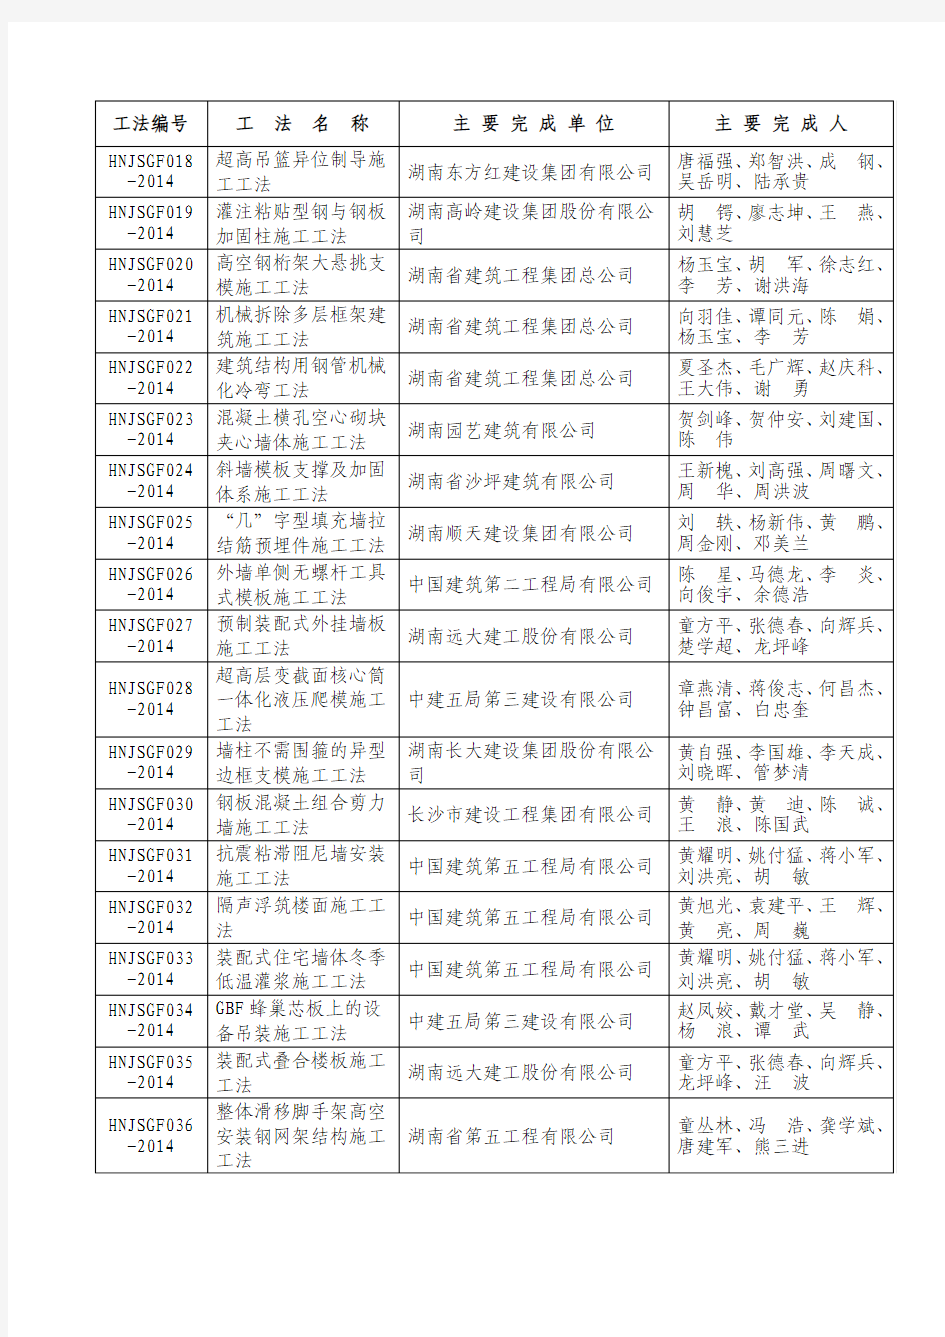 2014年省级工法公示名单